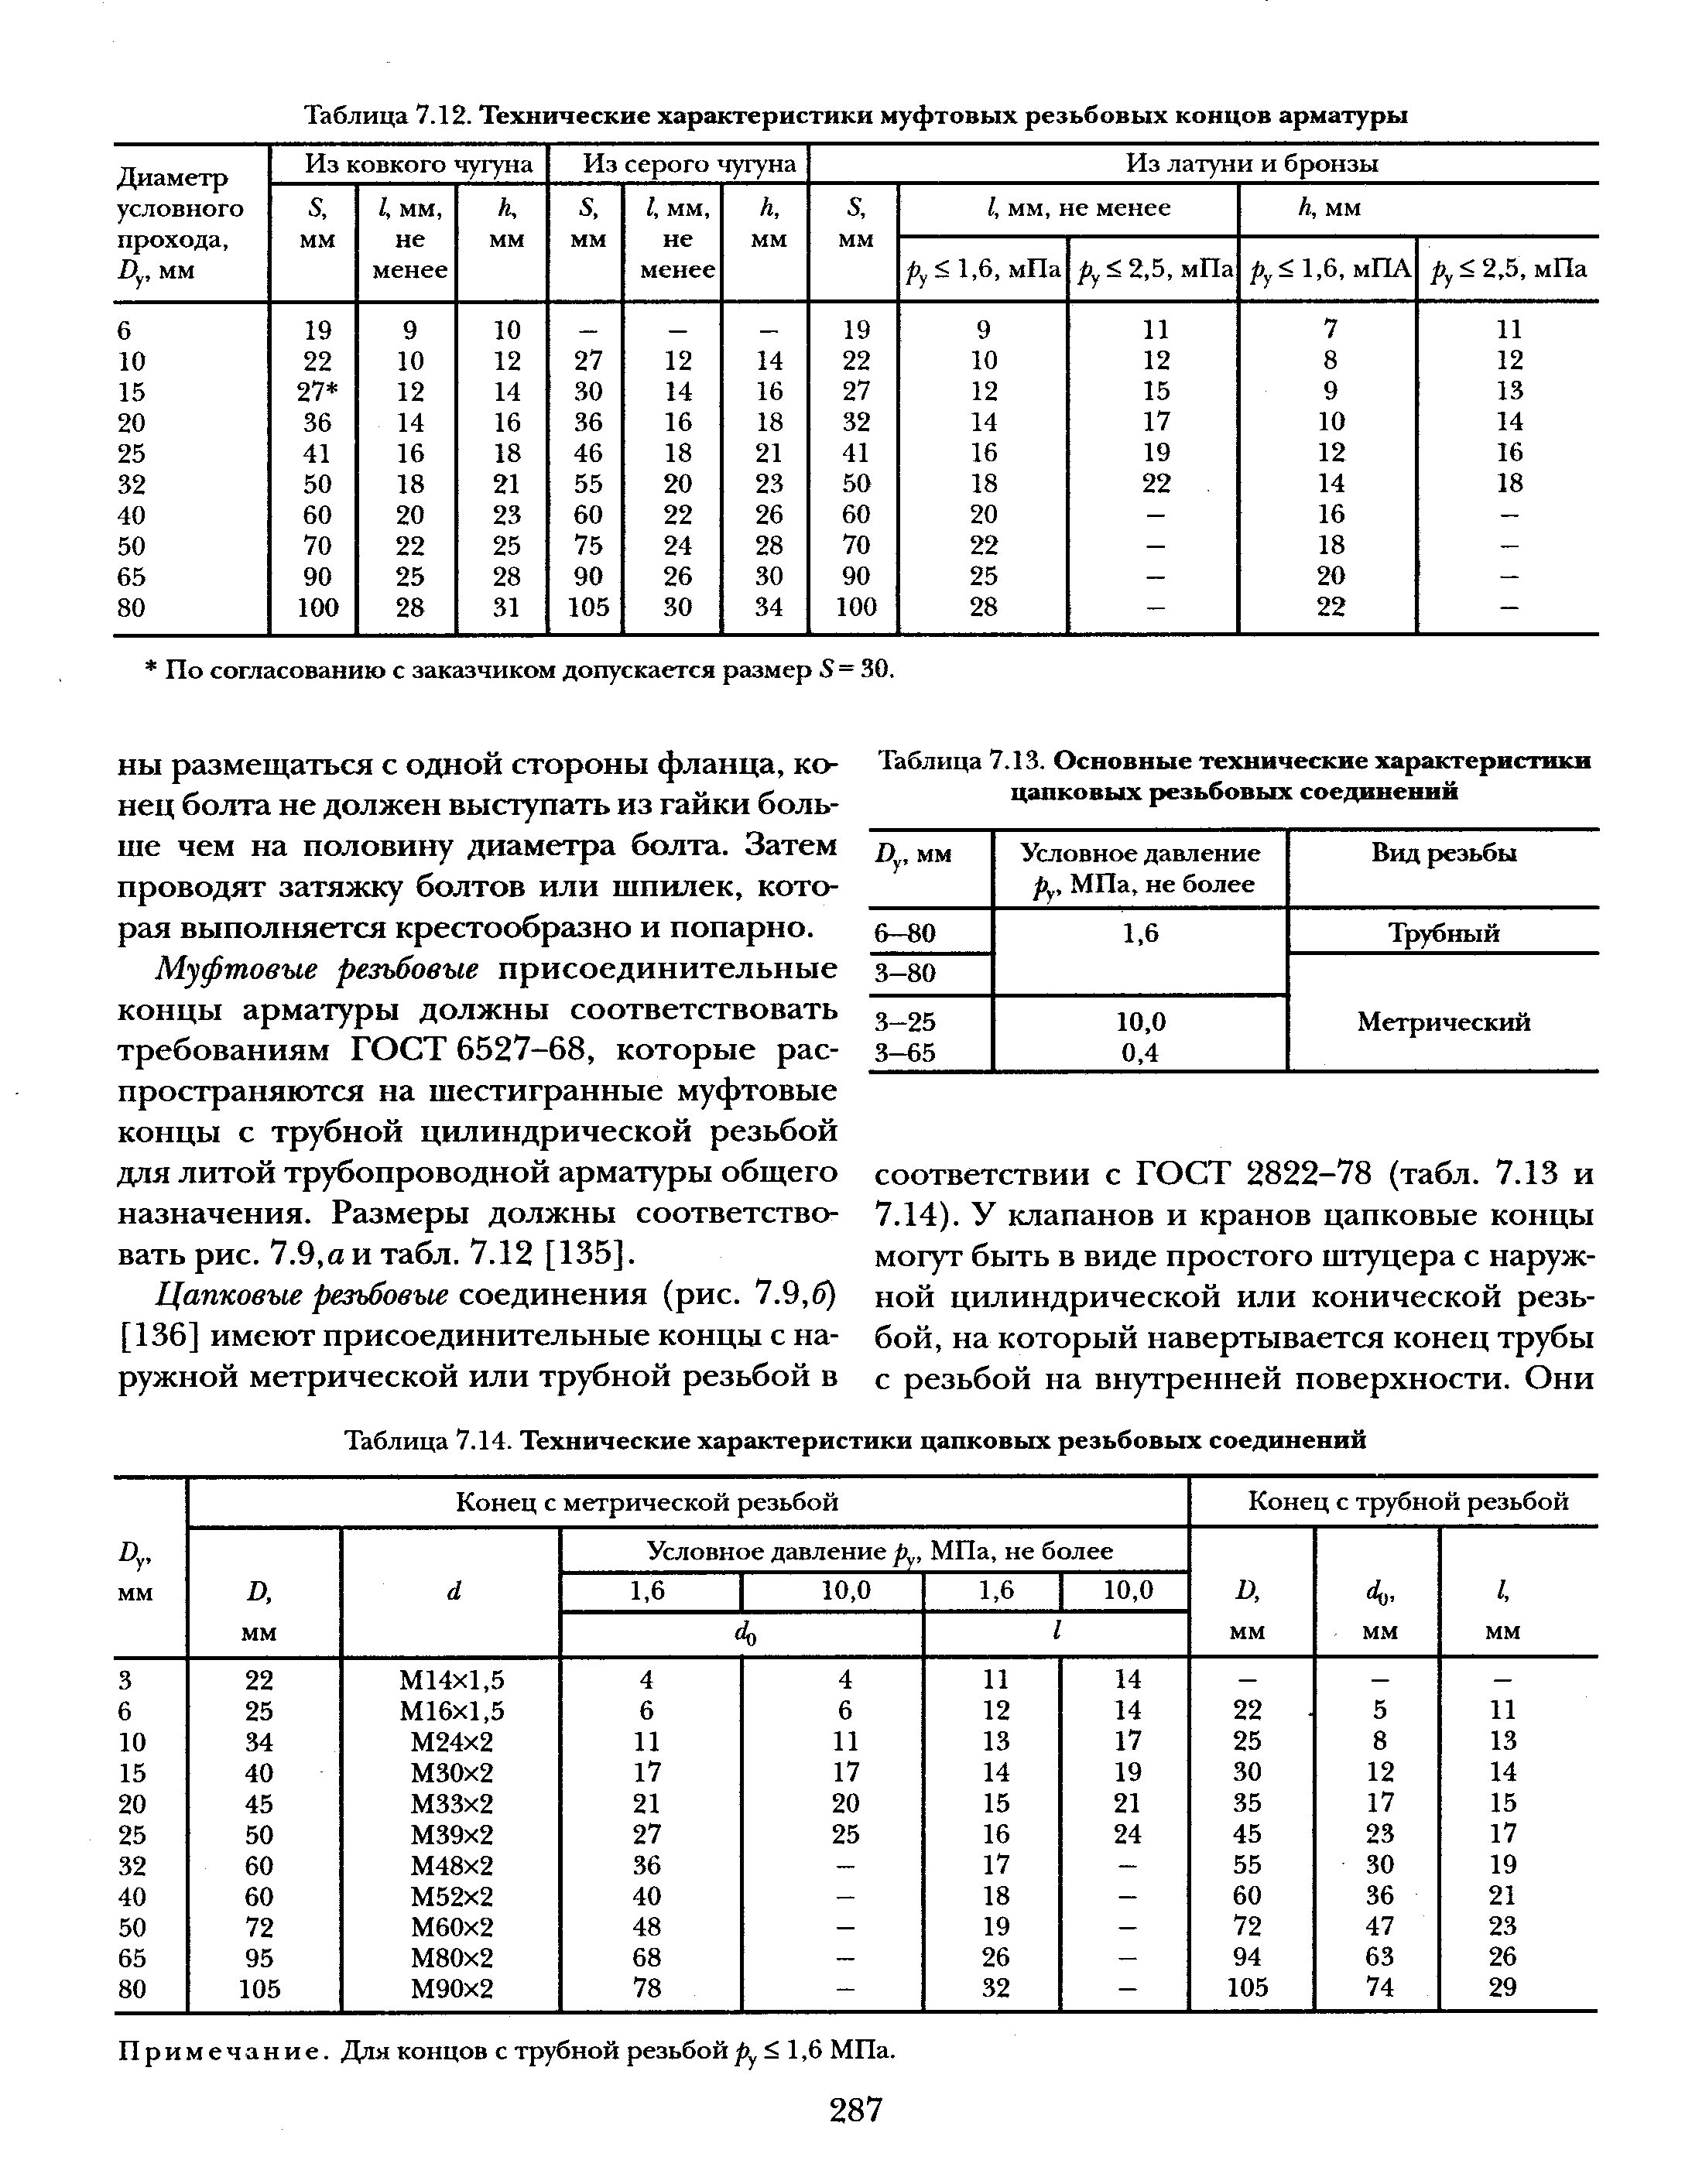 Таблица 7.13. <a href="/info/55350">Основные технические характеристики</a> цапковых резьбовых соединений
